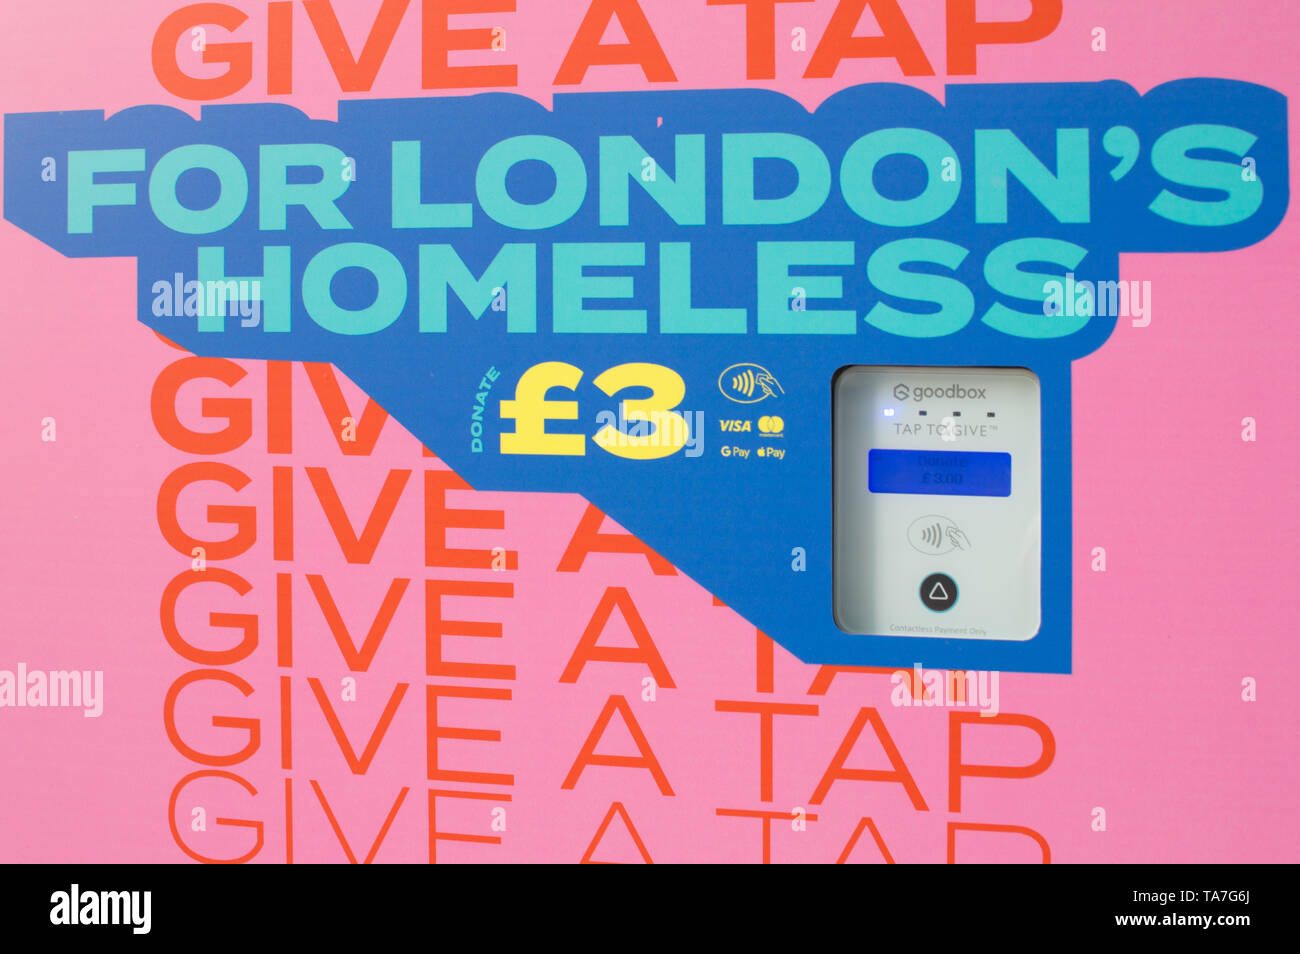 Appuyez sur initiative de Londres pour donner aux sans-abri de paiement sans contact avec l'organisme de bienfaisance Banque D'Images